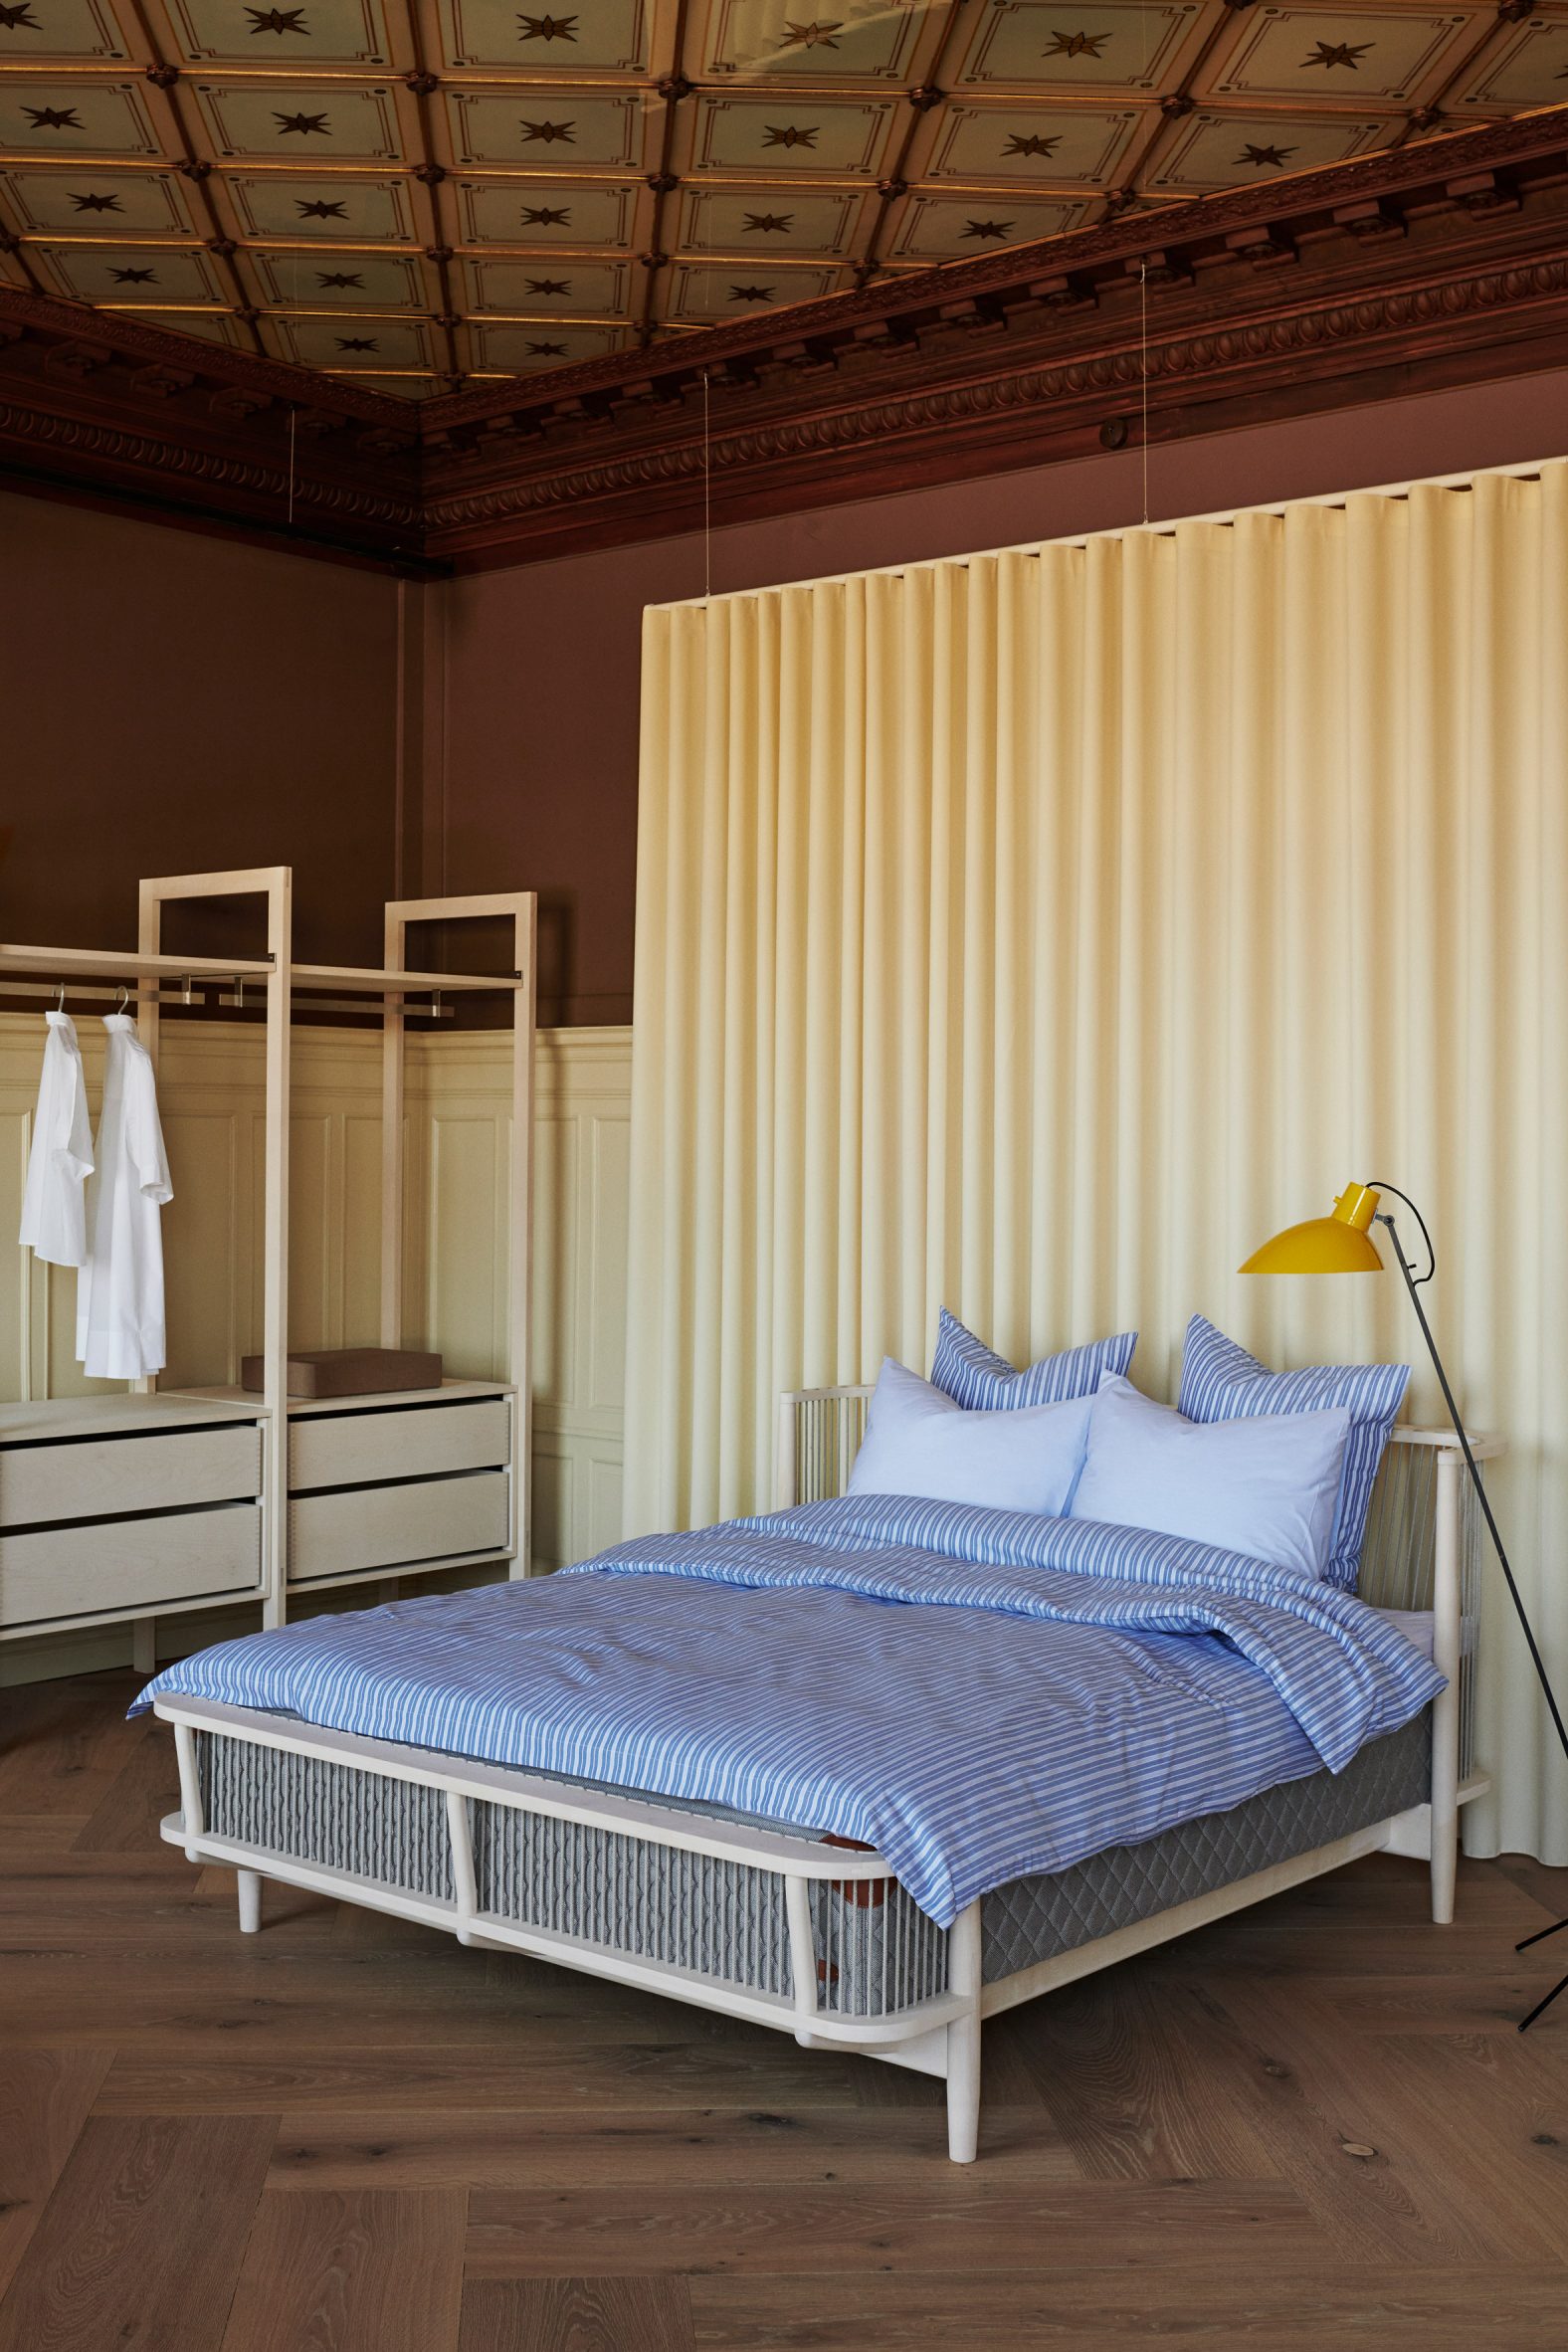 Almacenamiento de ropa y cama de madera en el showroom de Garde Hvalsøe